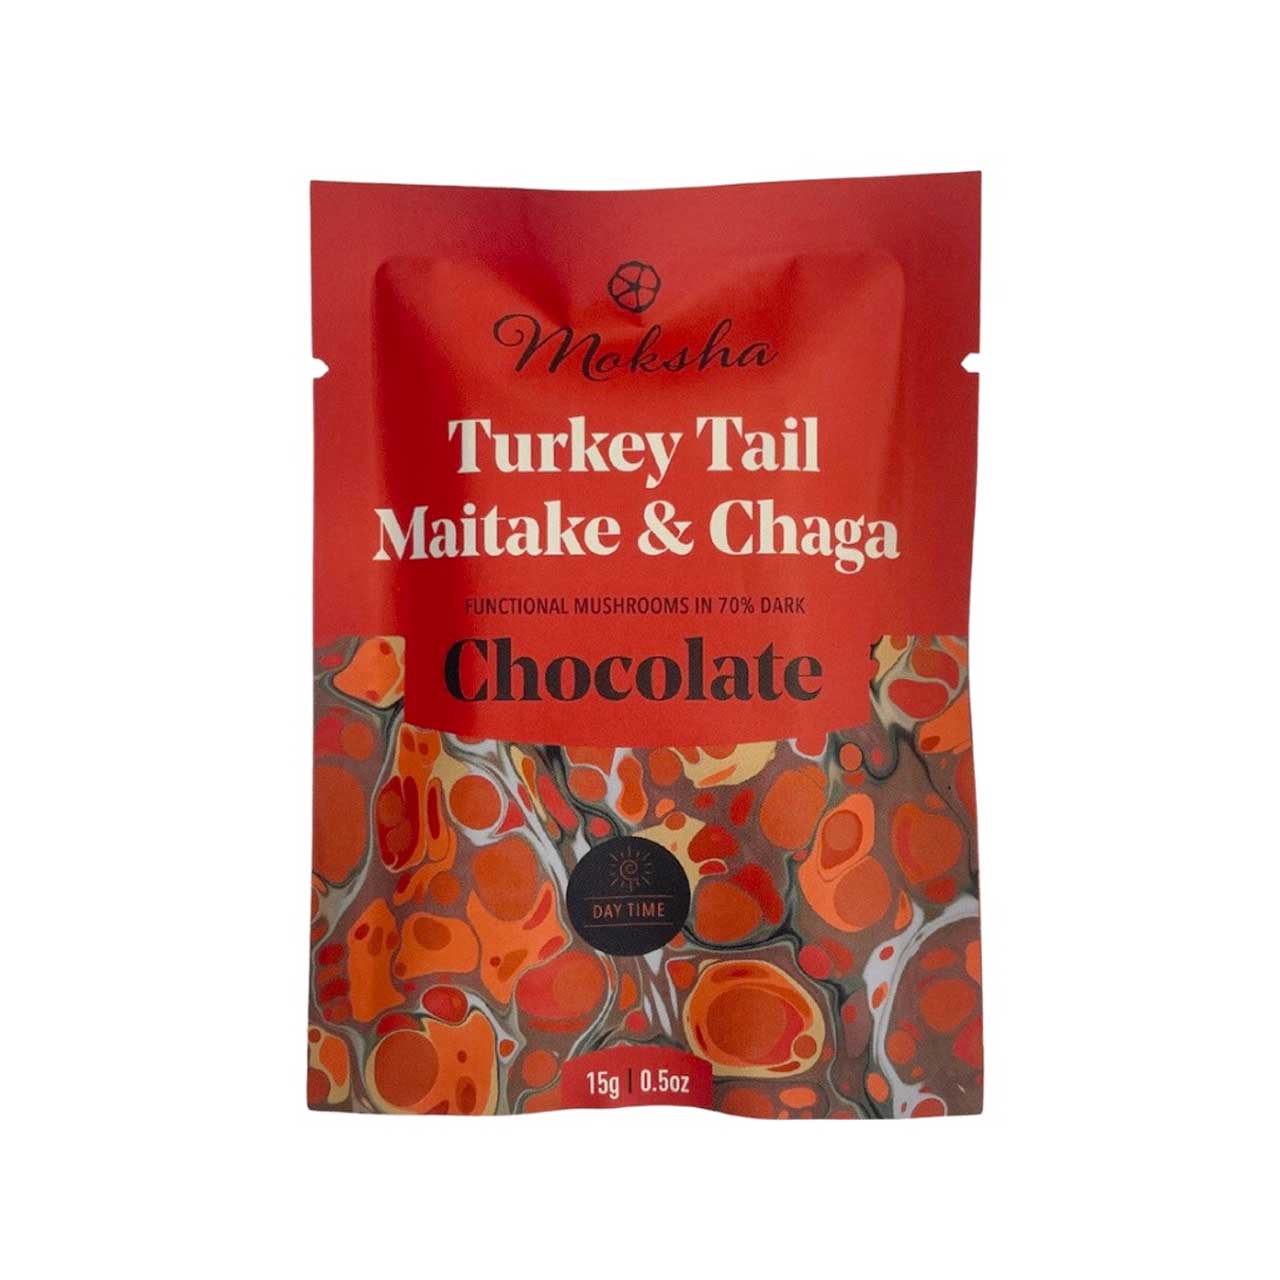 MOKSHA - TURKEY TAIL MAITAKE & CHAGA 70% DARK CHOCOLATE